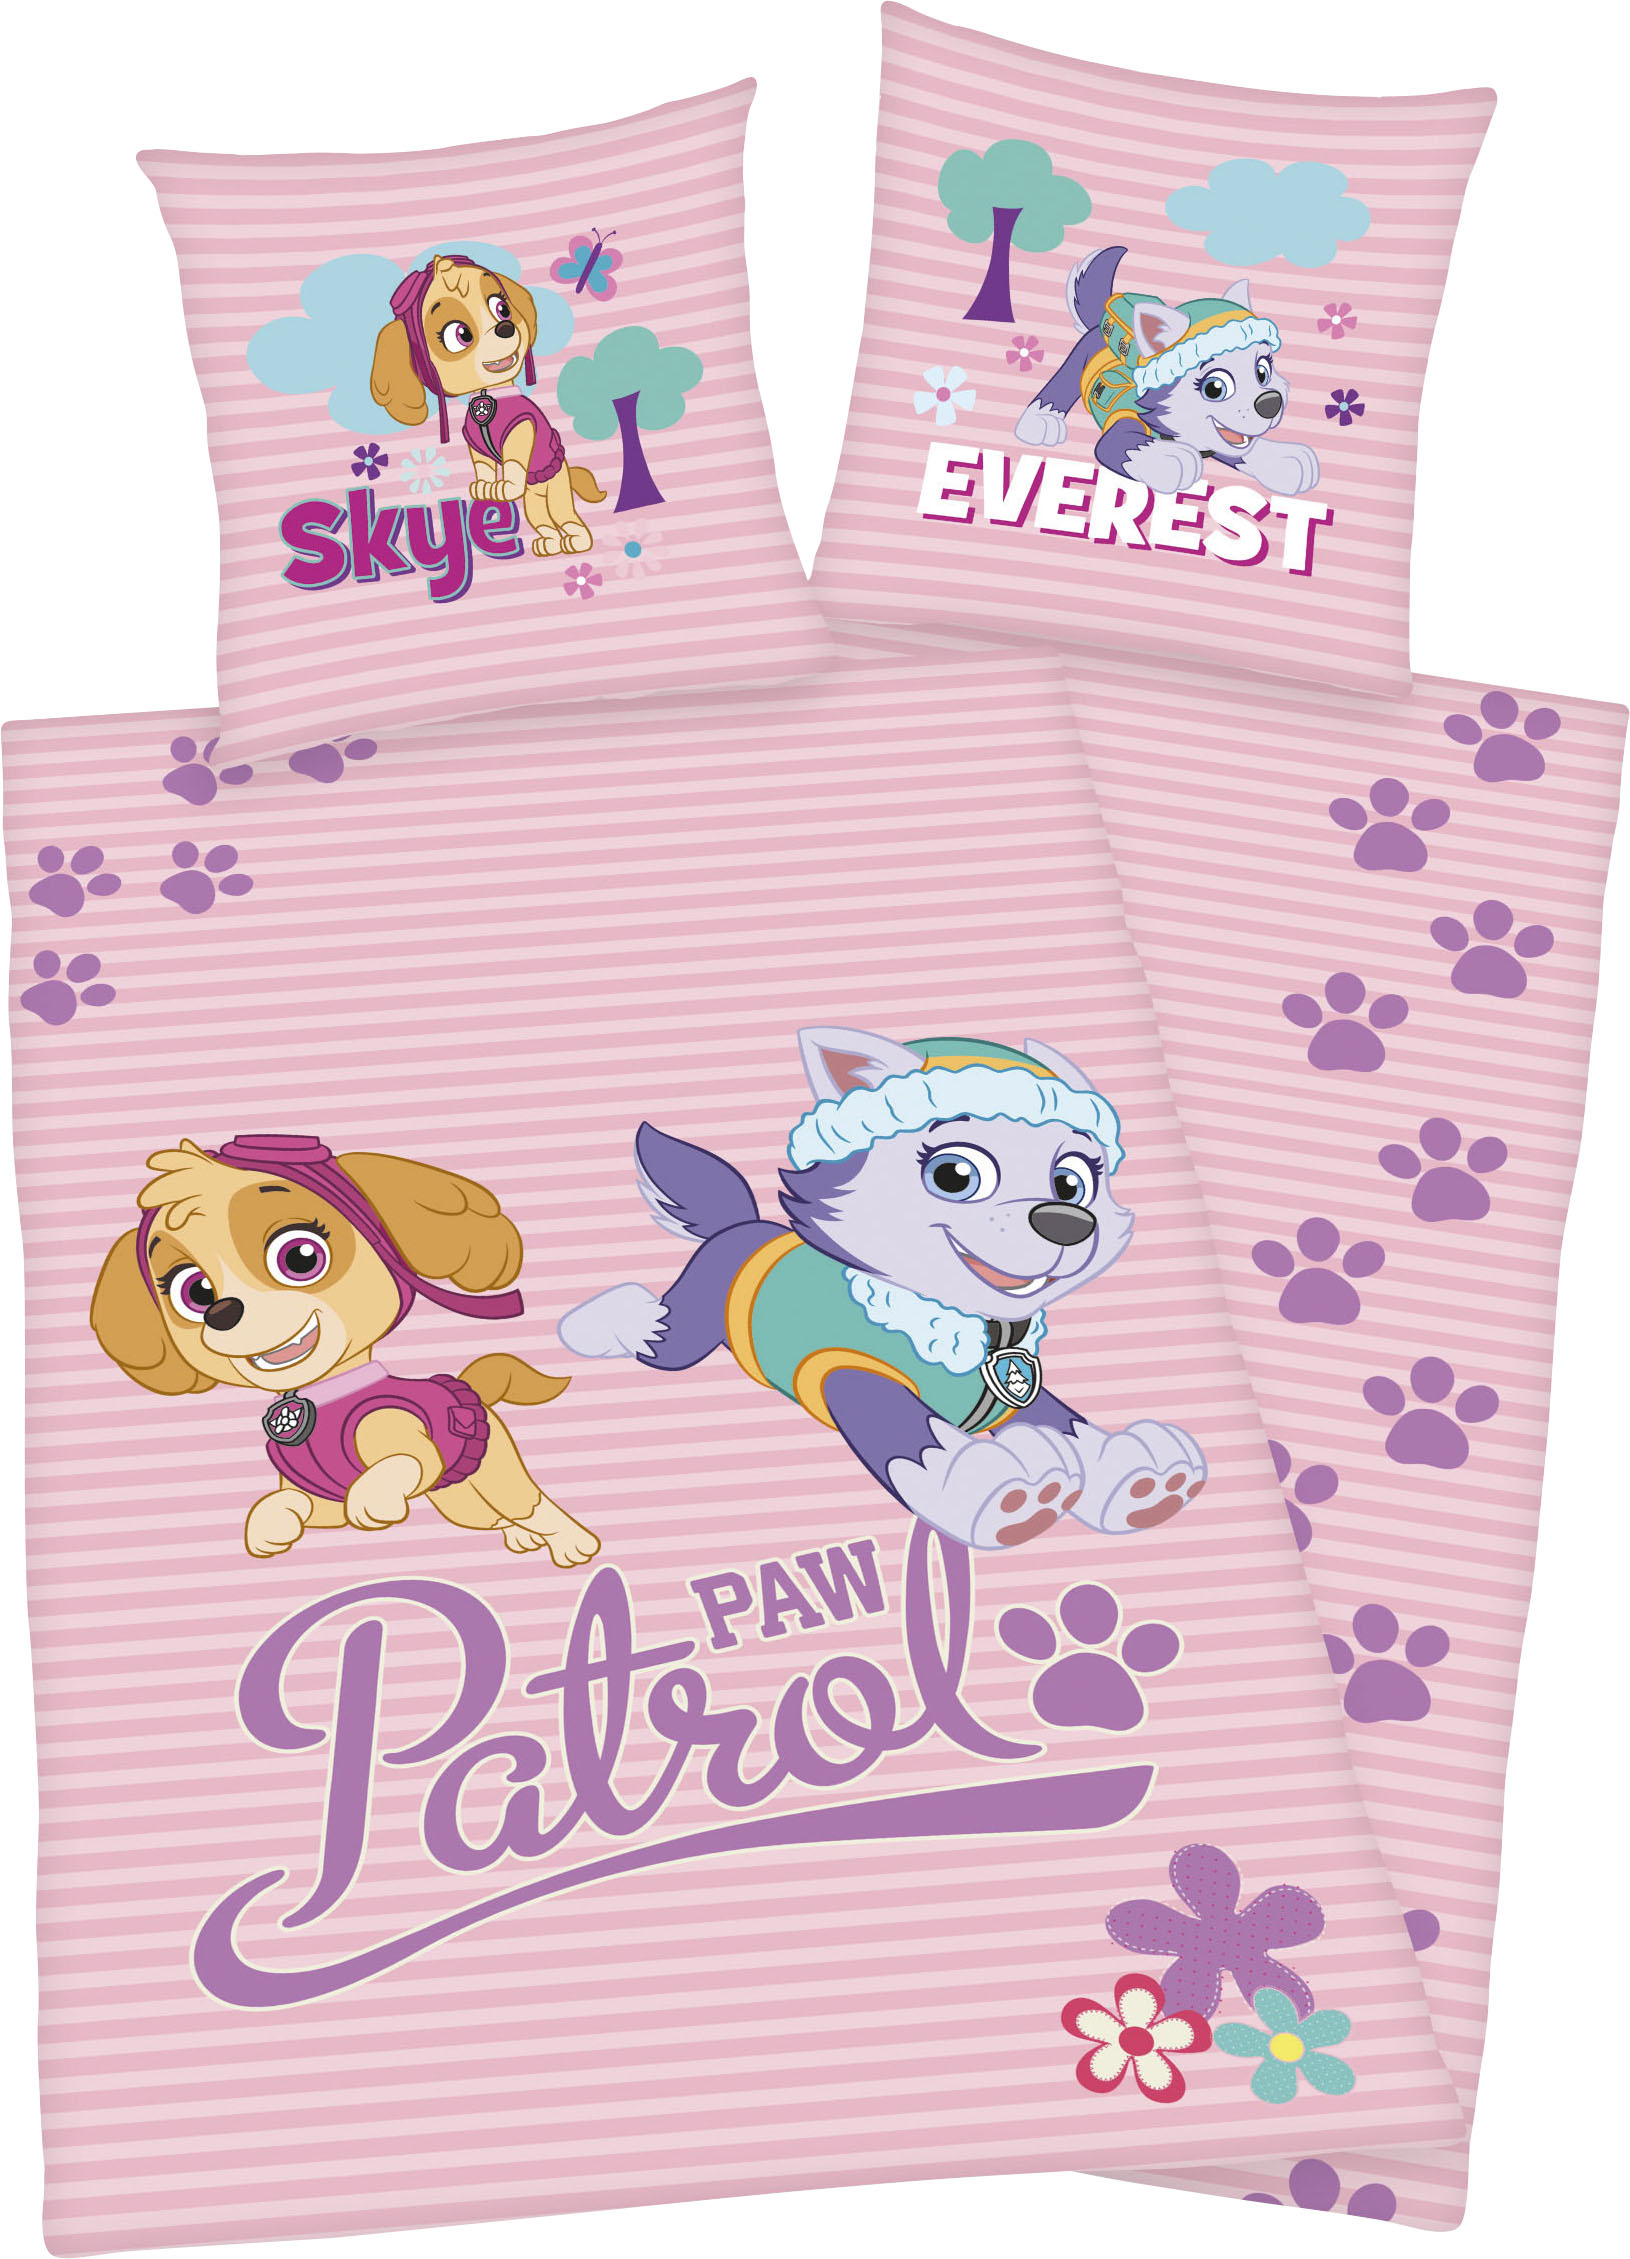 PAW PATROL Kinderbettwäsche "Skye und Everest", mit tollem Paw Patrol Motiv von Paw Patrol